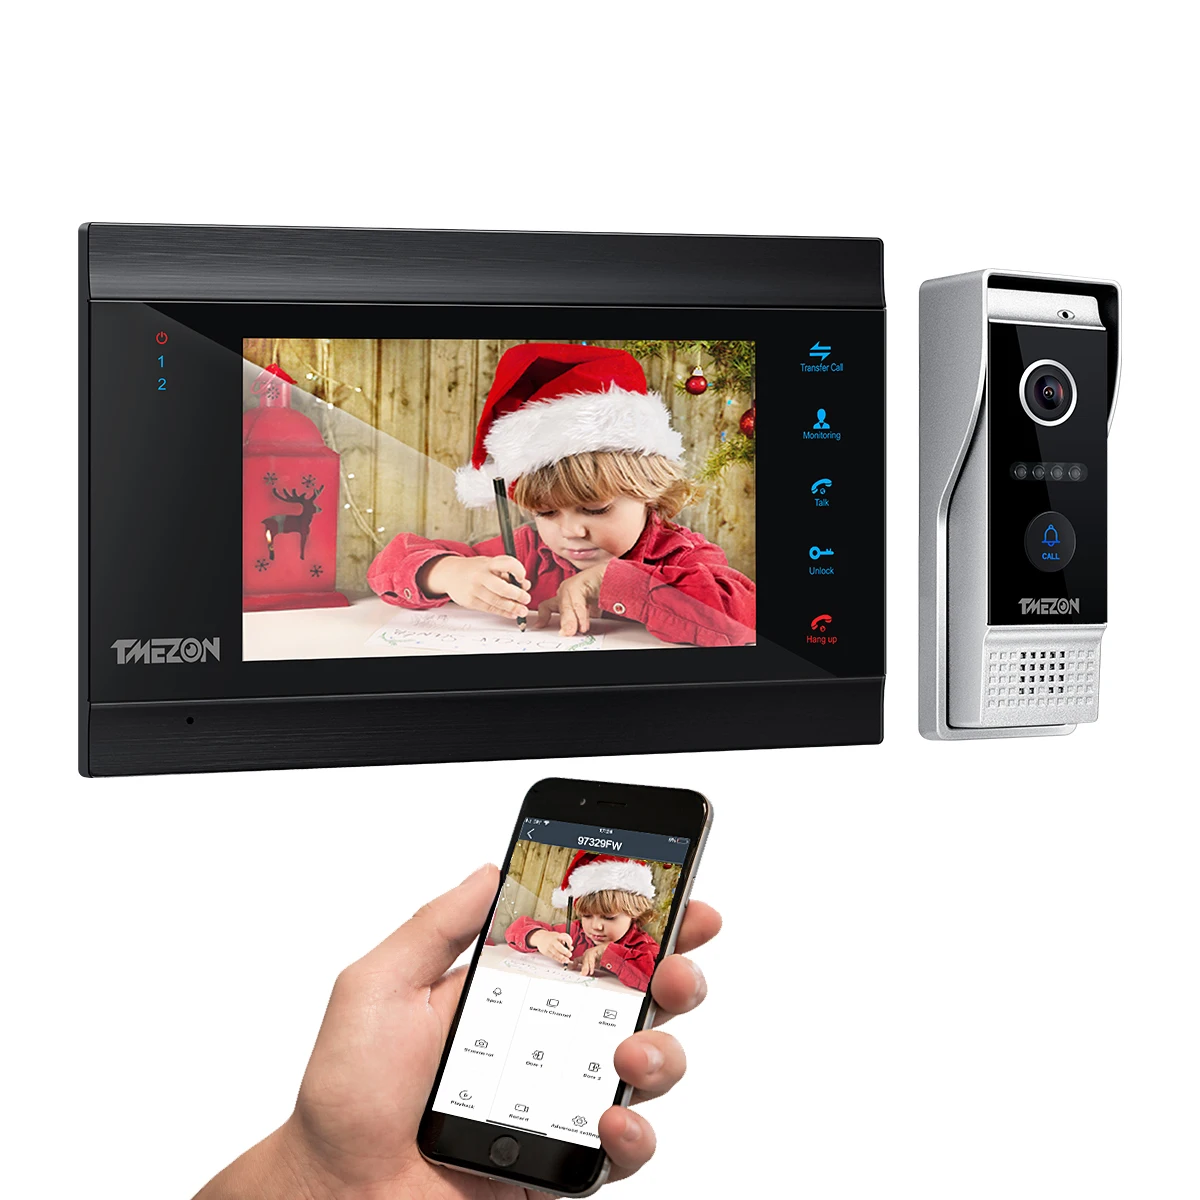 

NEW TMEZON 1080P Video Door Phone Home Intercom System Wireless WiFi Smart IP Video Doorbell 7 Inch with Wired Doorbell TUYA APP